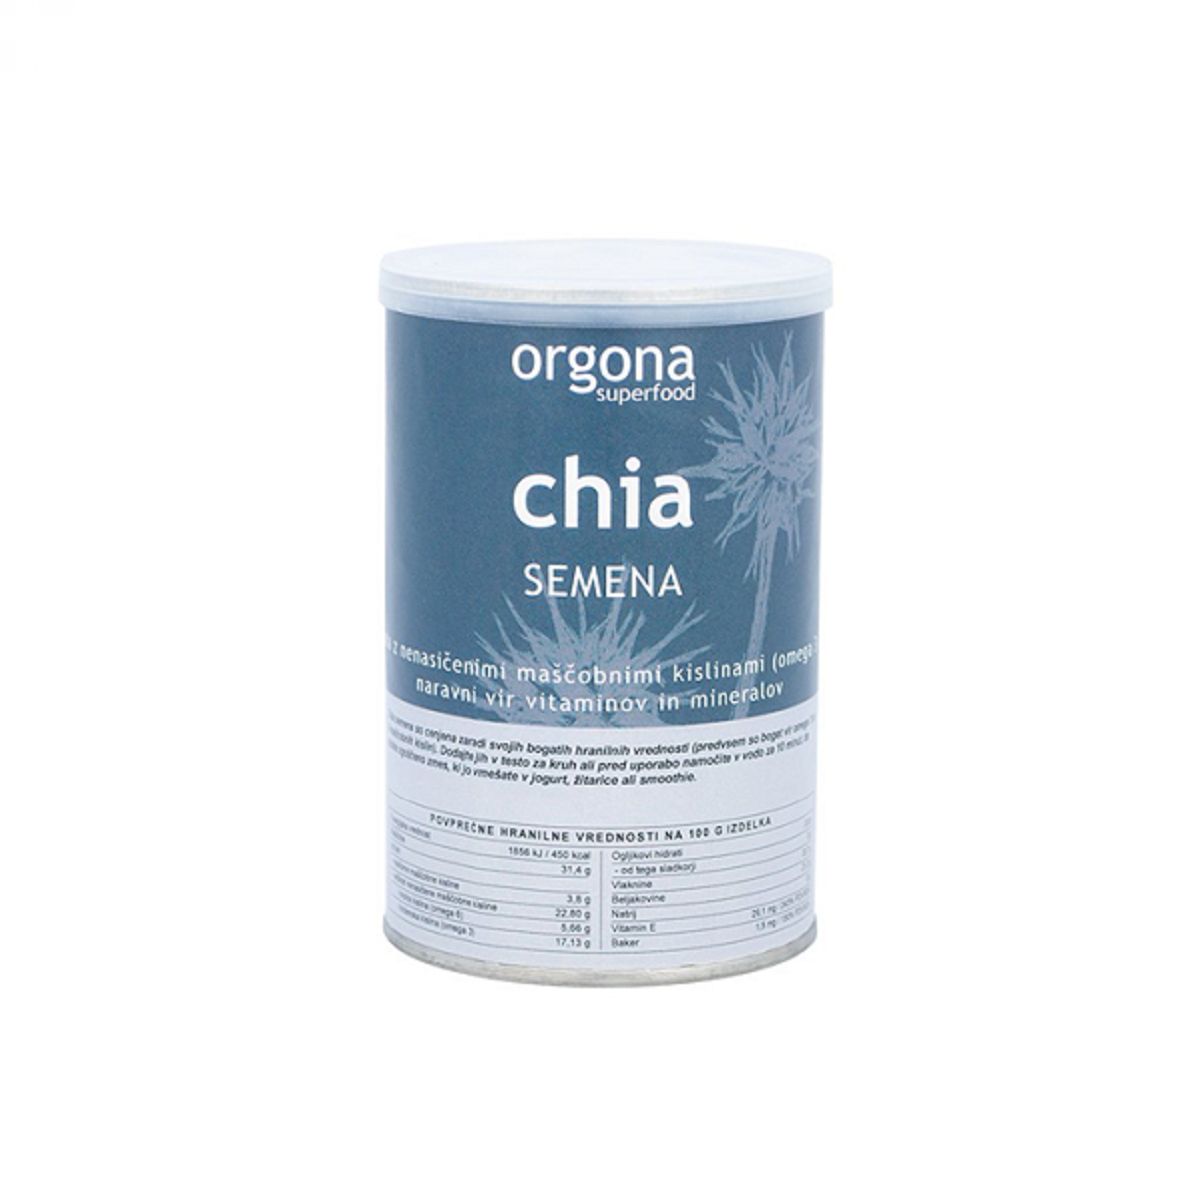 Orgona chia semena iz ekološke pridelave, 200 g - BIO